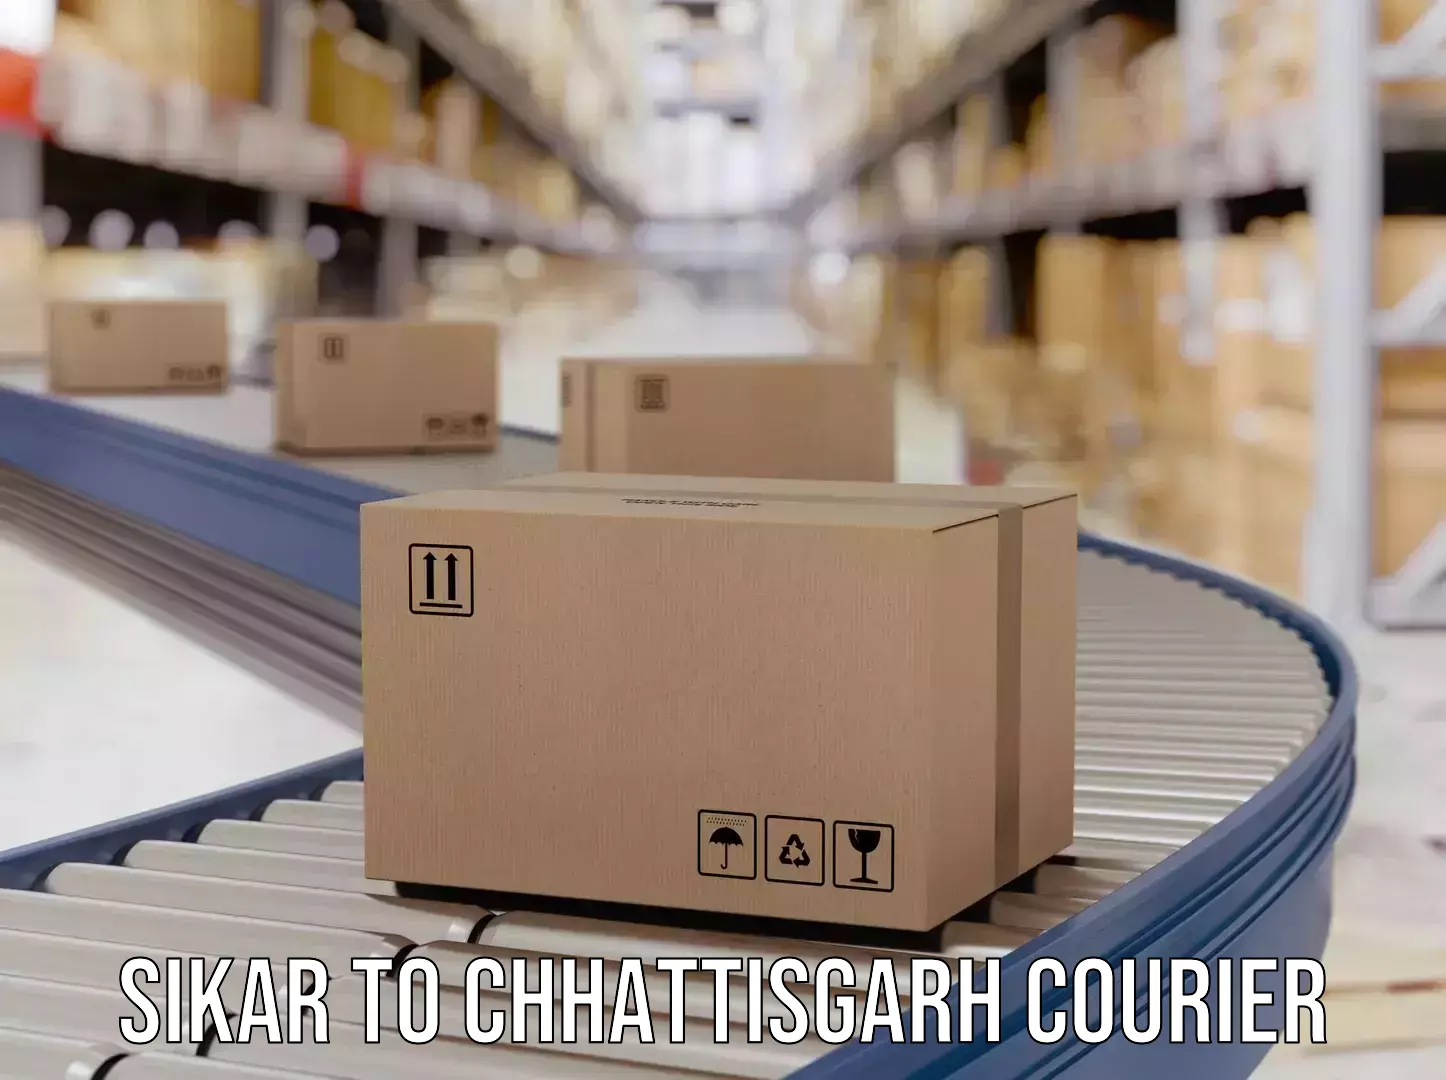 Urban courier service Sikar to Chhattisgarh